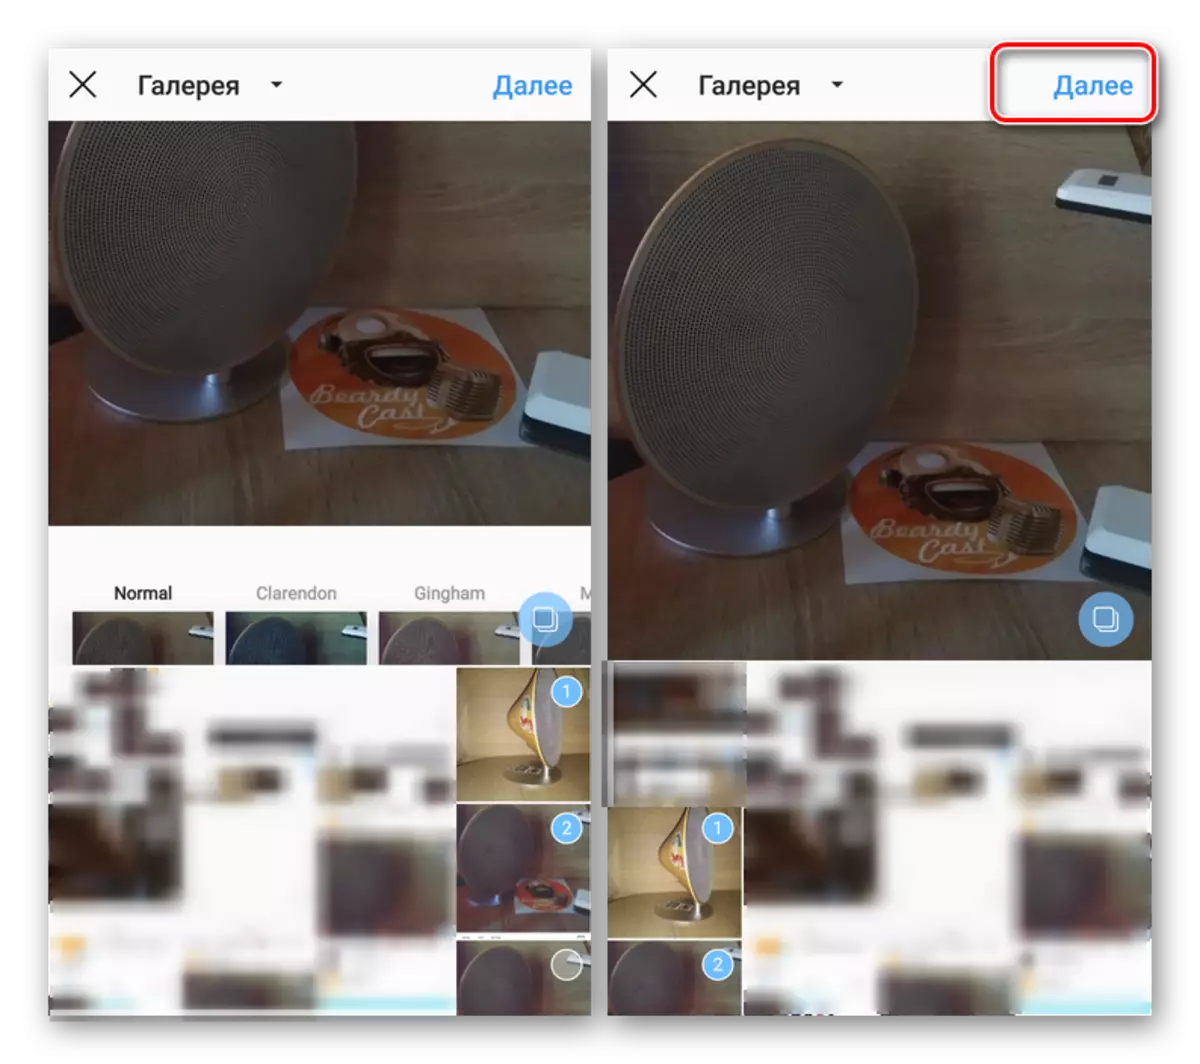 Mariksa carousel sareng transisi kana publikasi dina aplikasi Instagram pikeun Android